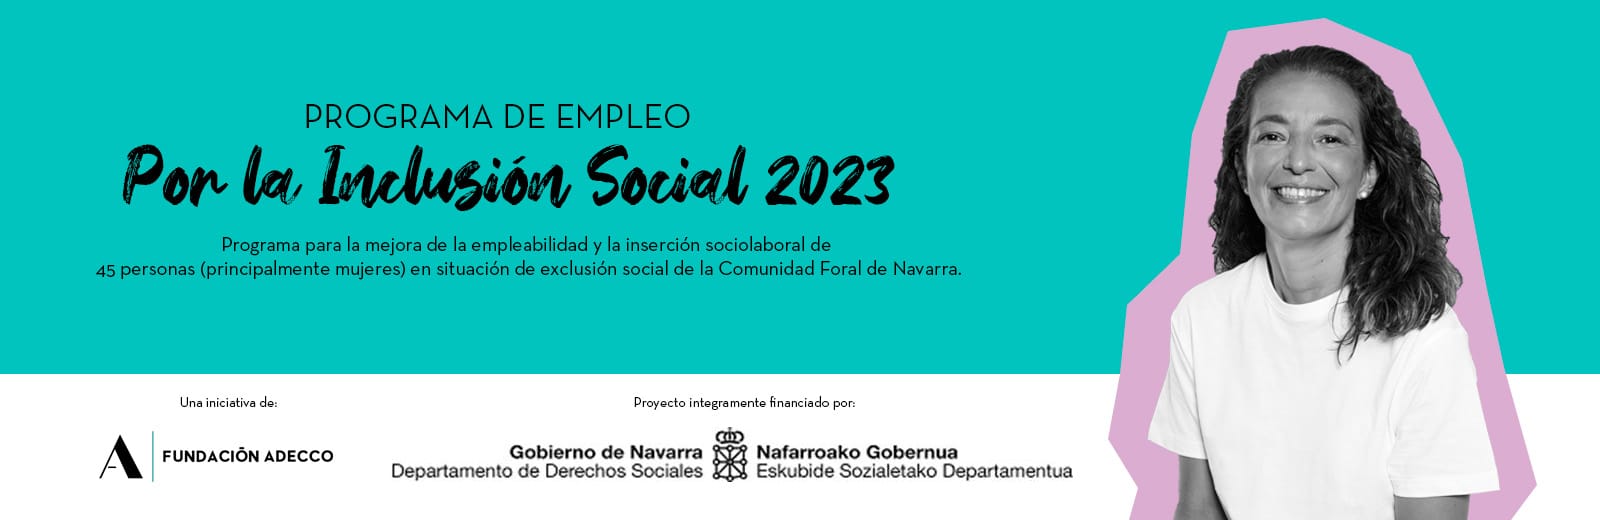 Programa de empleo_Por la Inclusión Social 2023